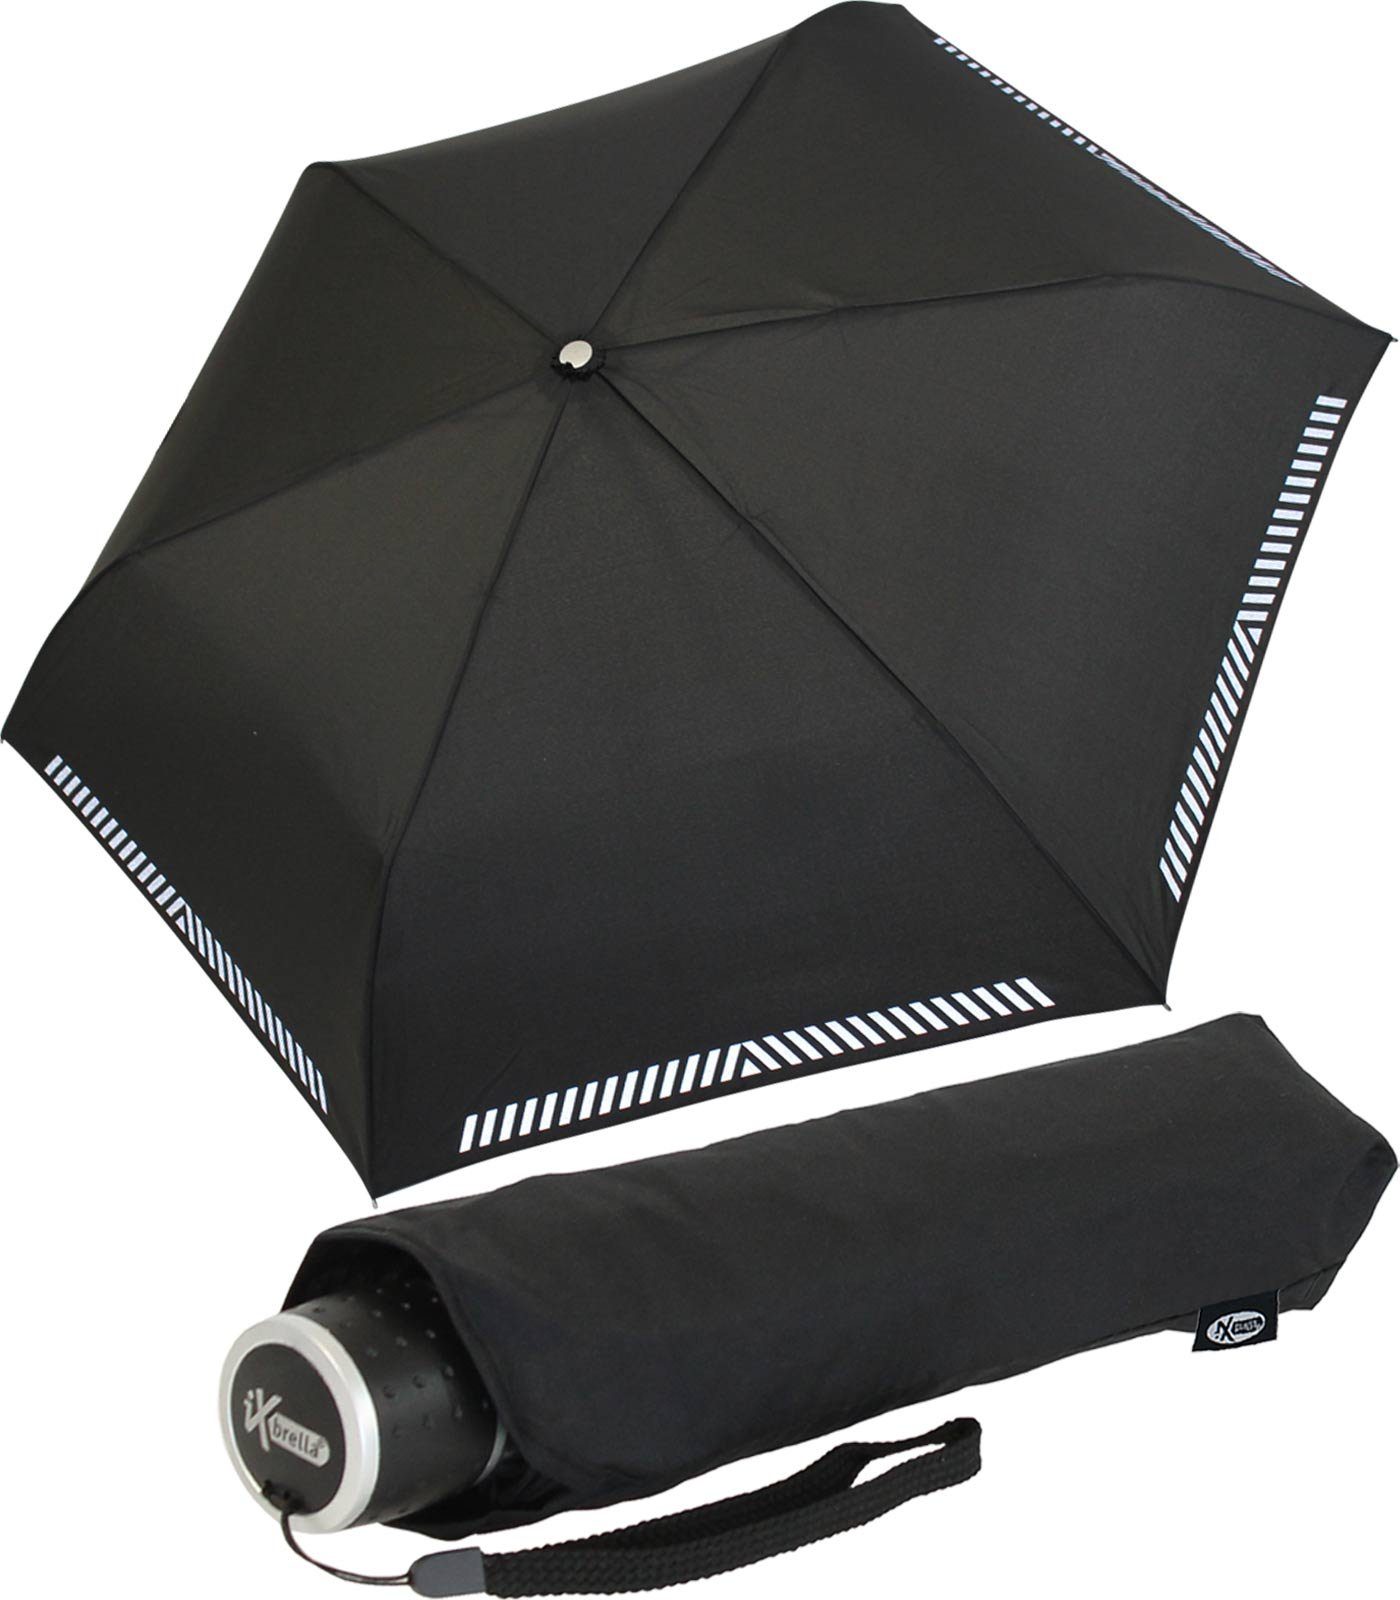 iX-brella Taschenregenschirm Mini Kinderschirm Safety Reflex extra leicht, reflektierend schwarz